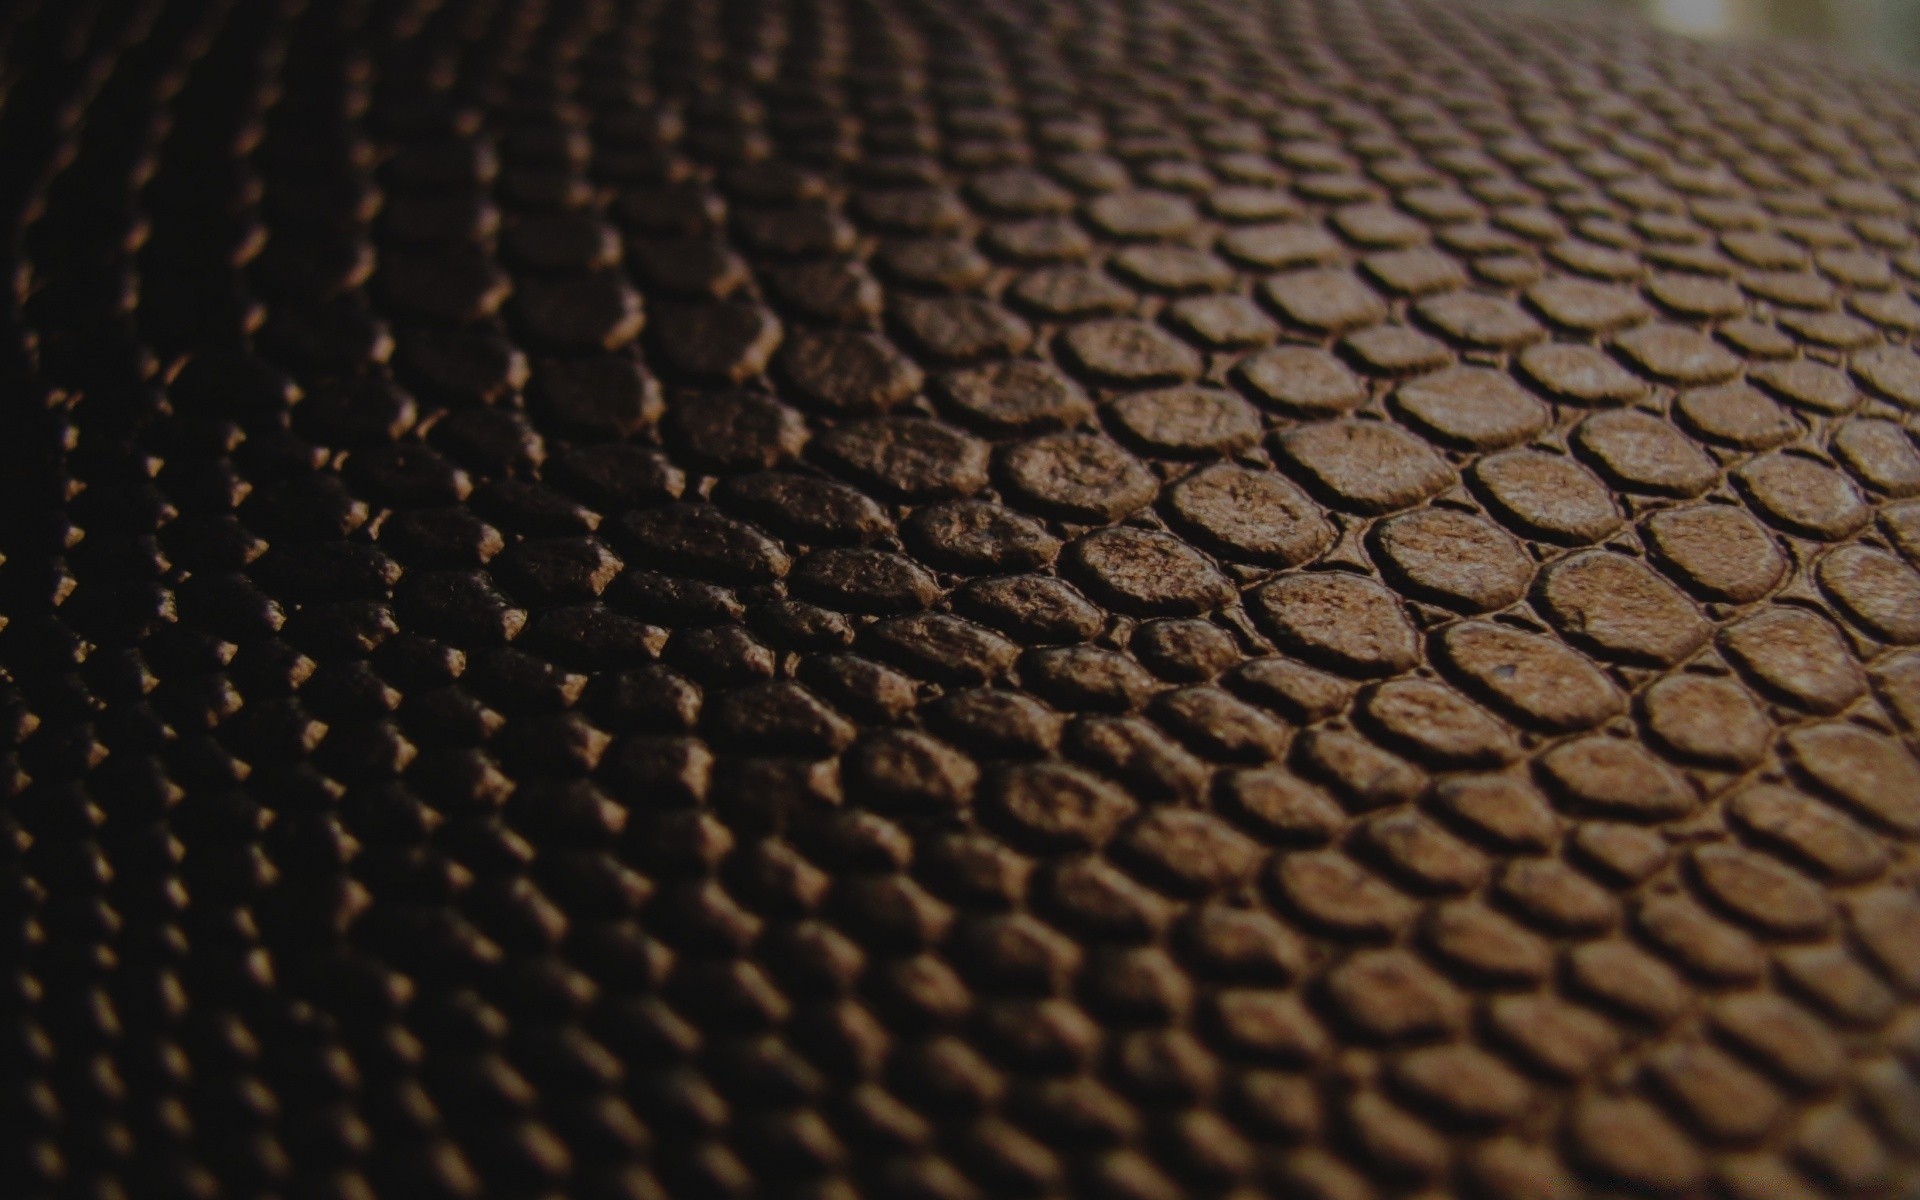 винтаж кожа аннотация текстура шаблон рабочего стола темный ткань обои дизайн грубо фон роскошные змея мода поверхность крупным планом